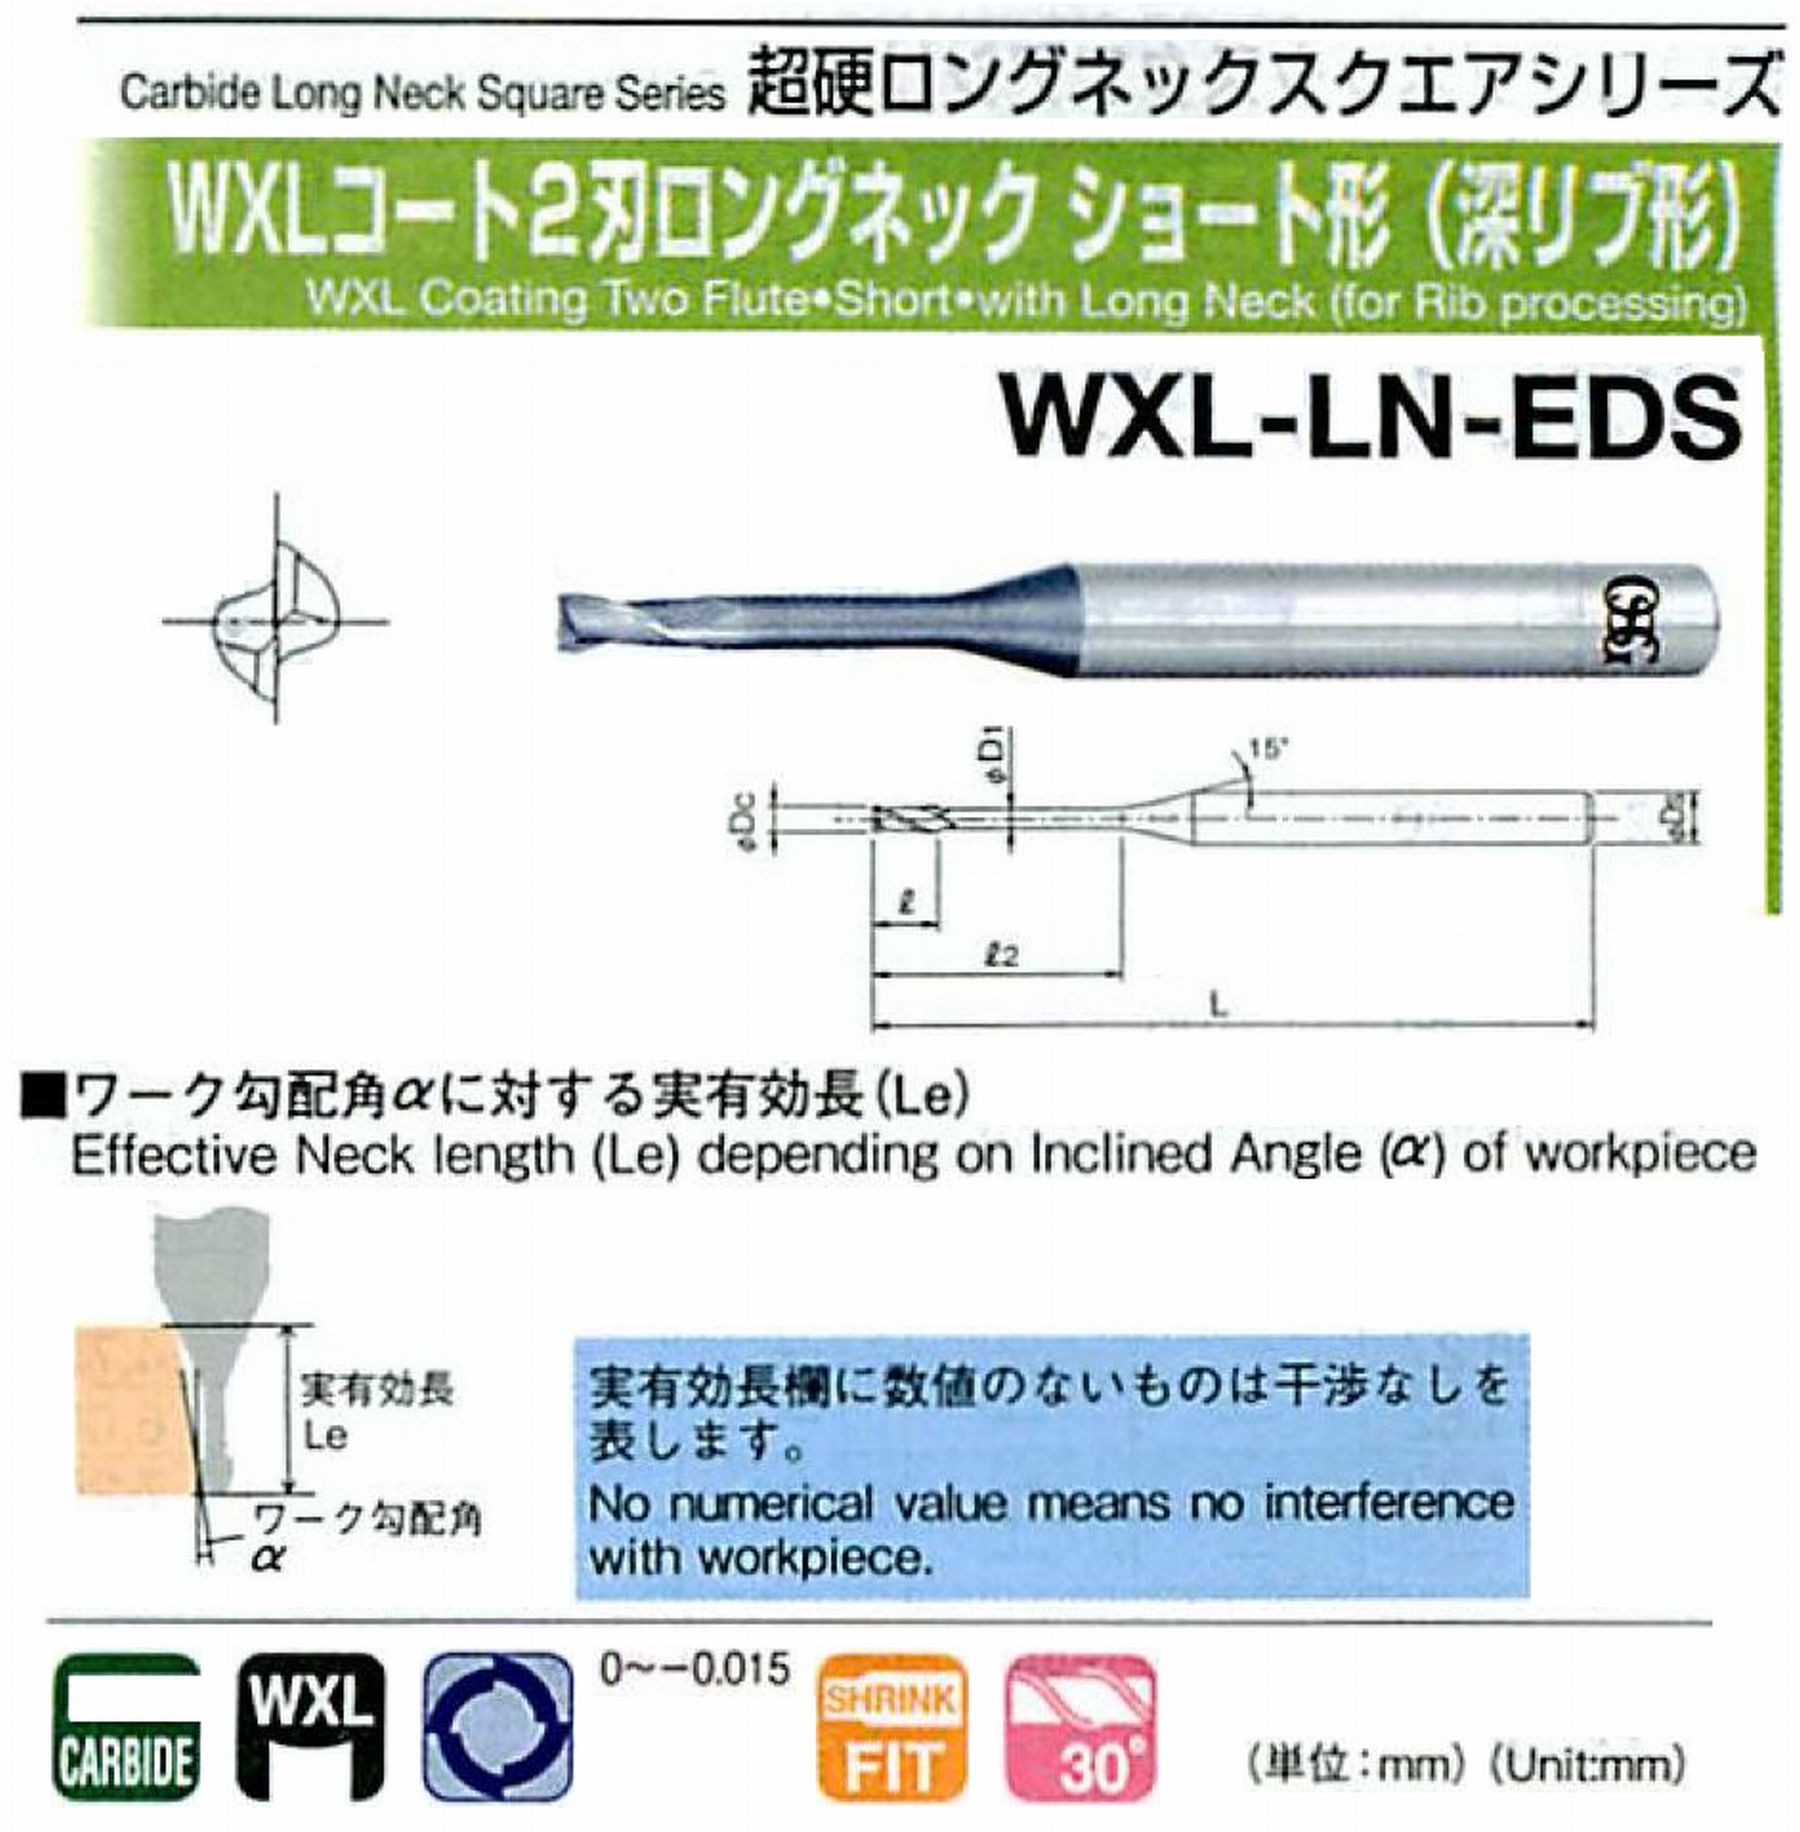 オーエスジー/OSG WXLコート2刃 ロングネックショート形(深リブ形) WXL-LN-EDS 外径×首下長0.4×4 全長45 刃長0.6 シャンク径4mm 首径0.37